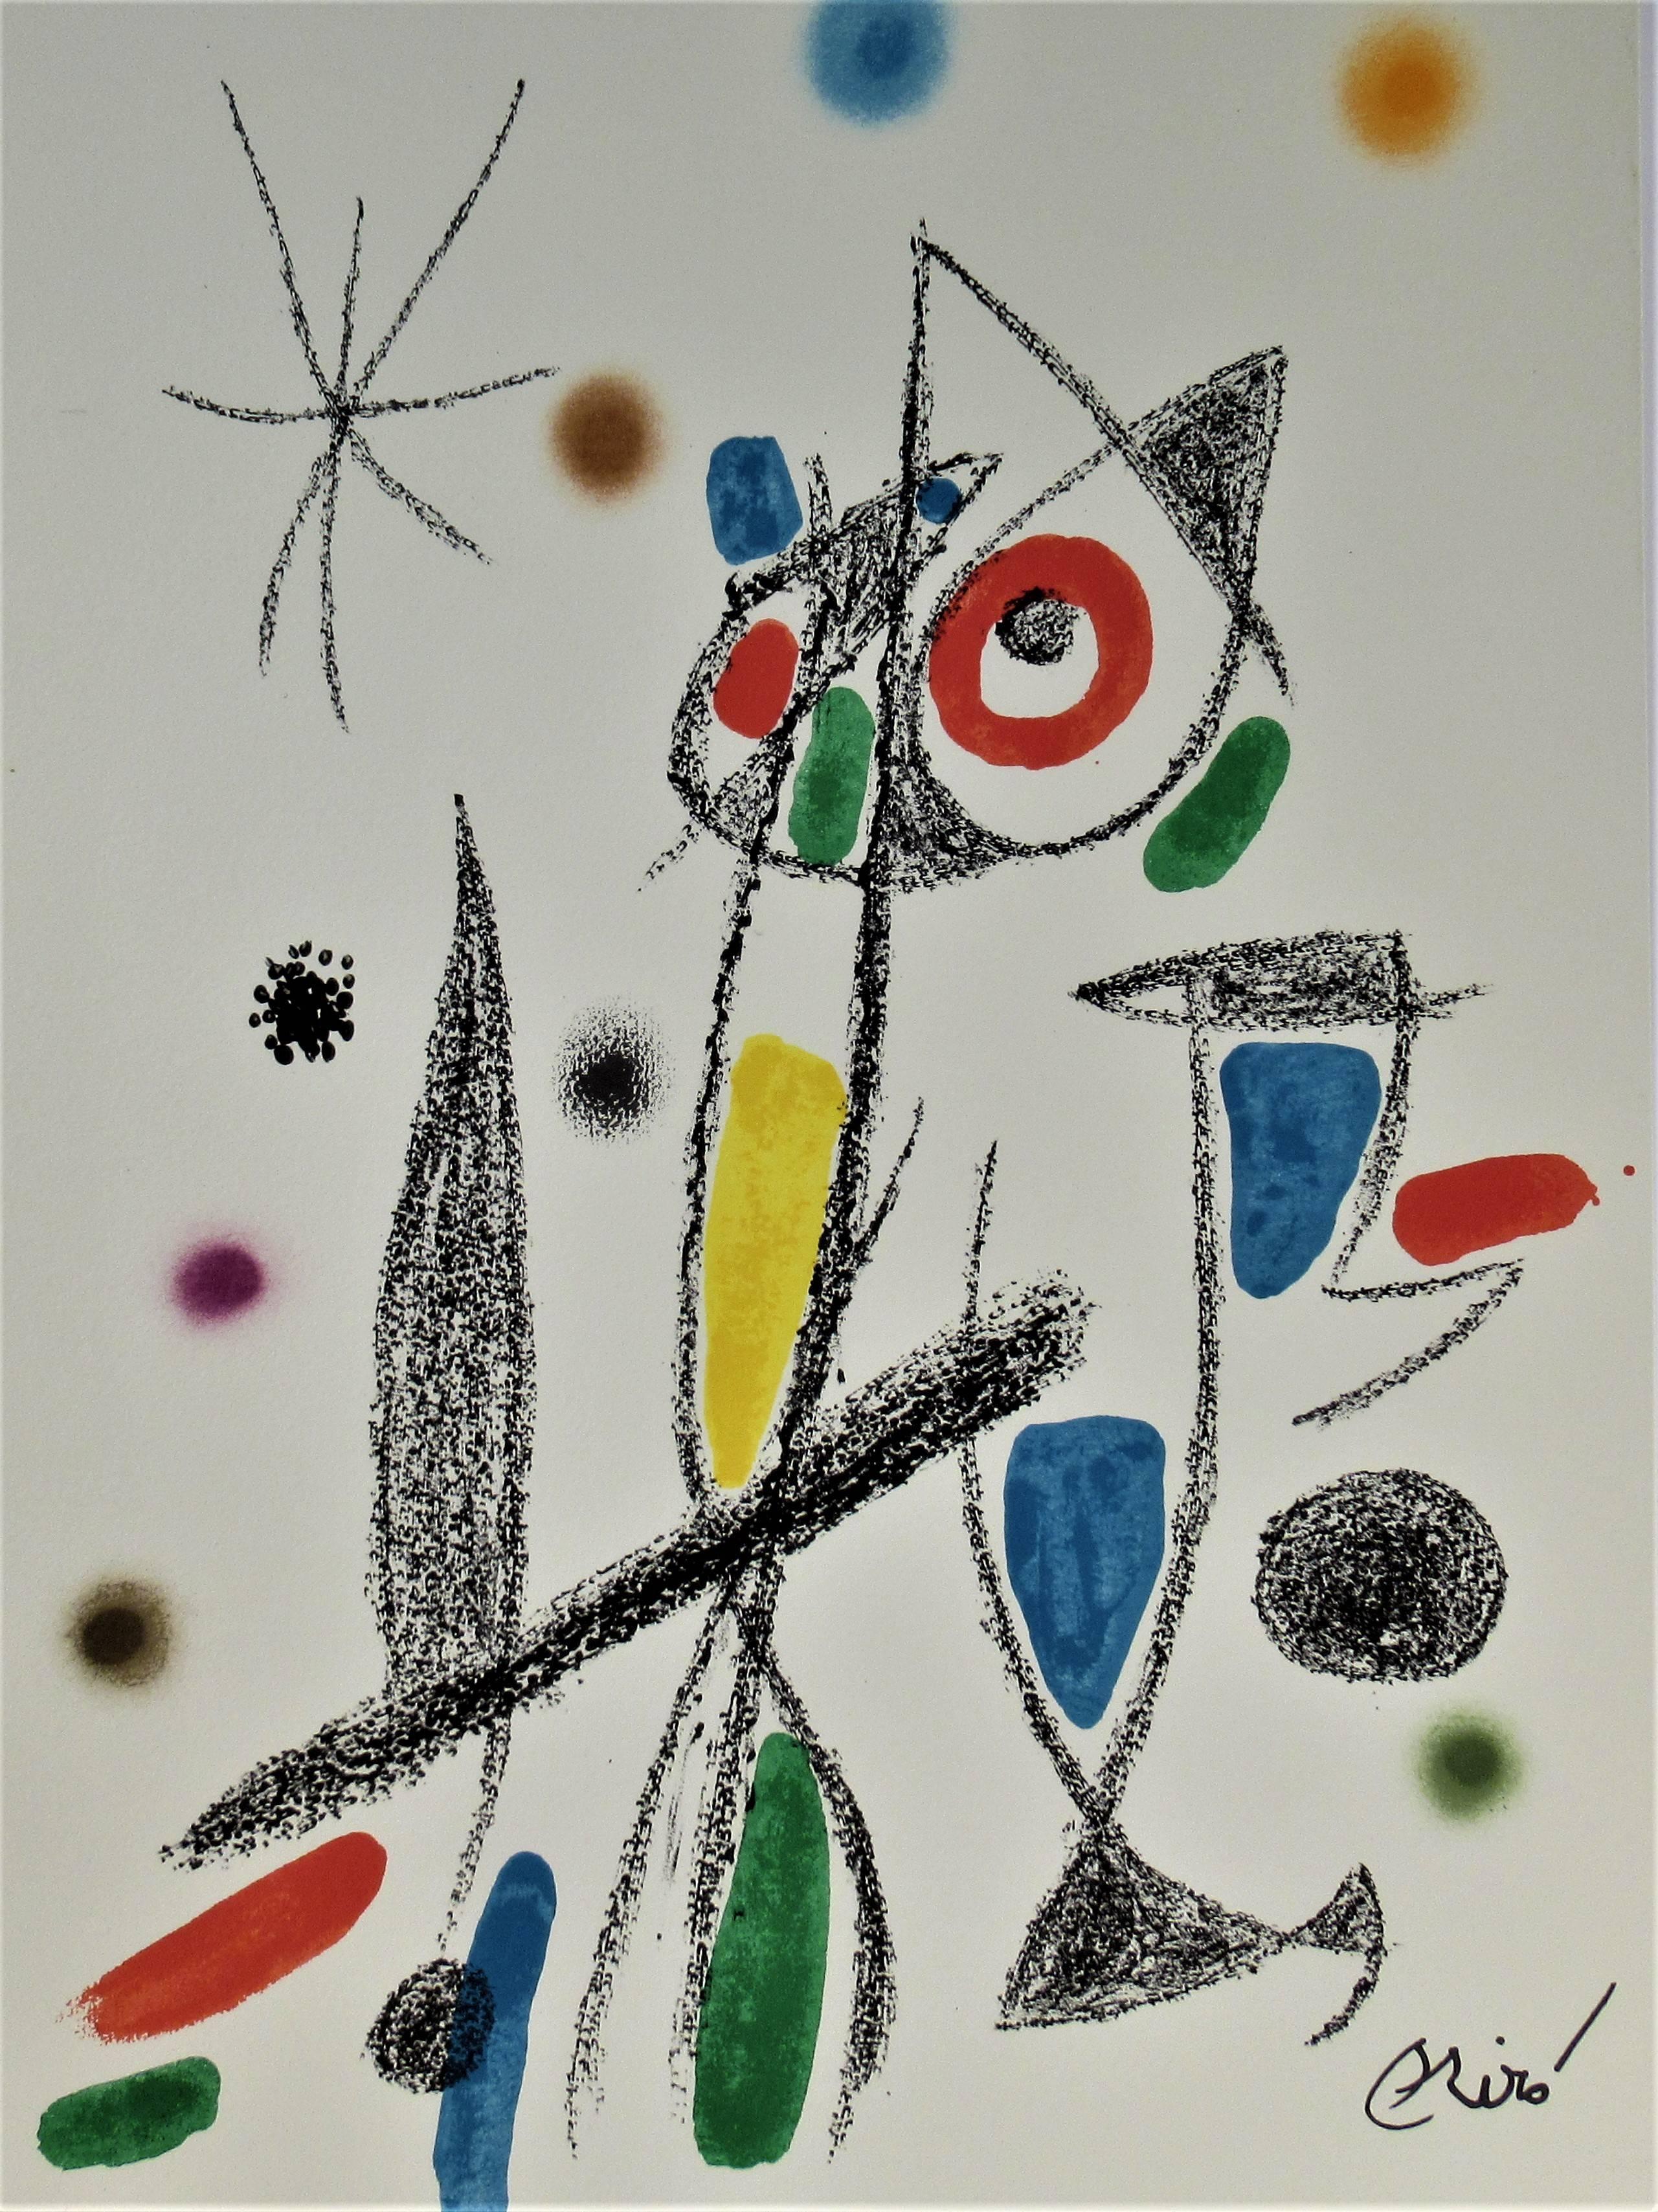 Maravillas Con Variations Acrosticas en el Jardin de Miro - Print by Joan Miró